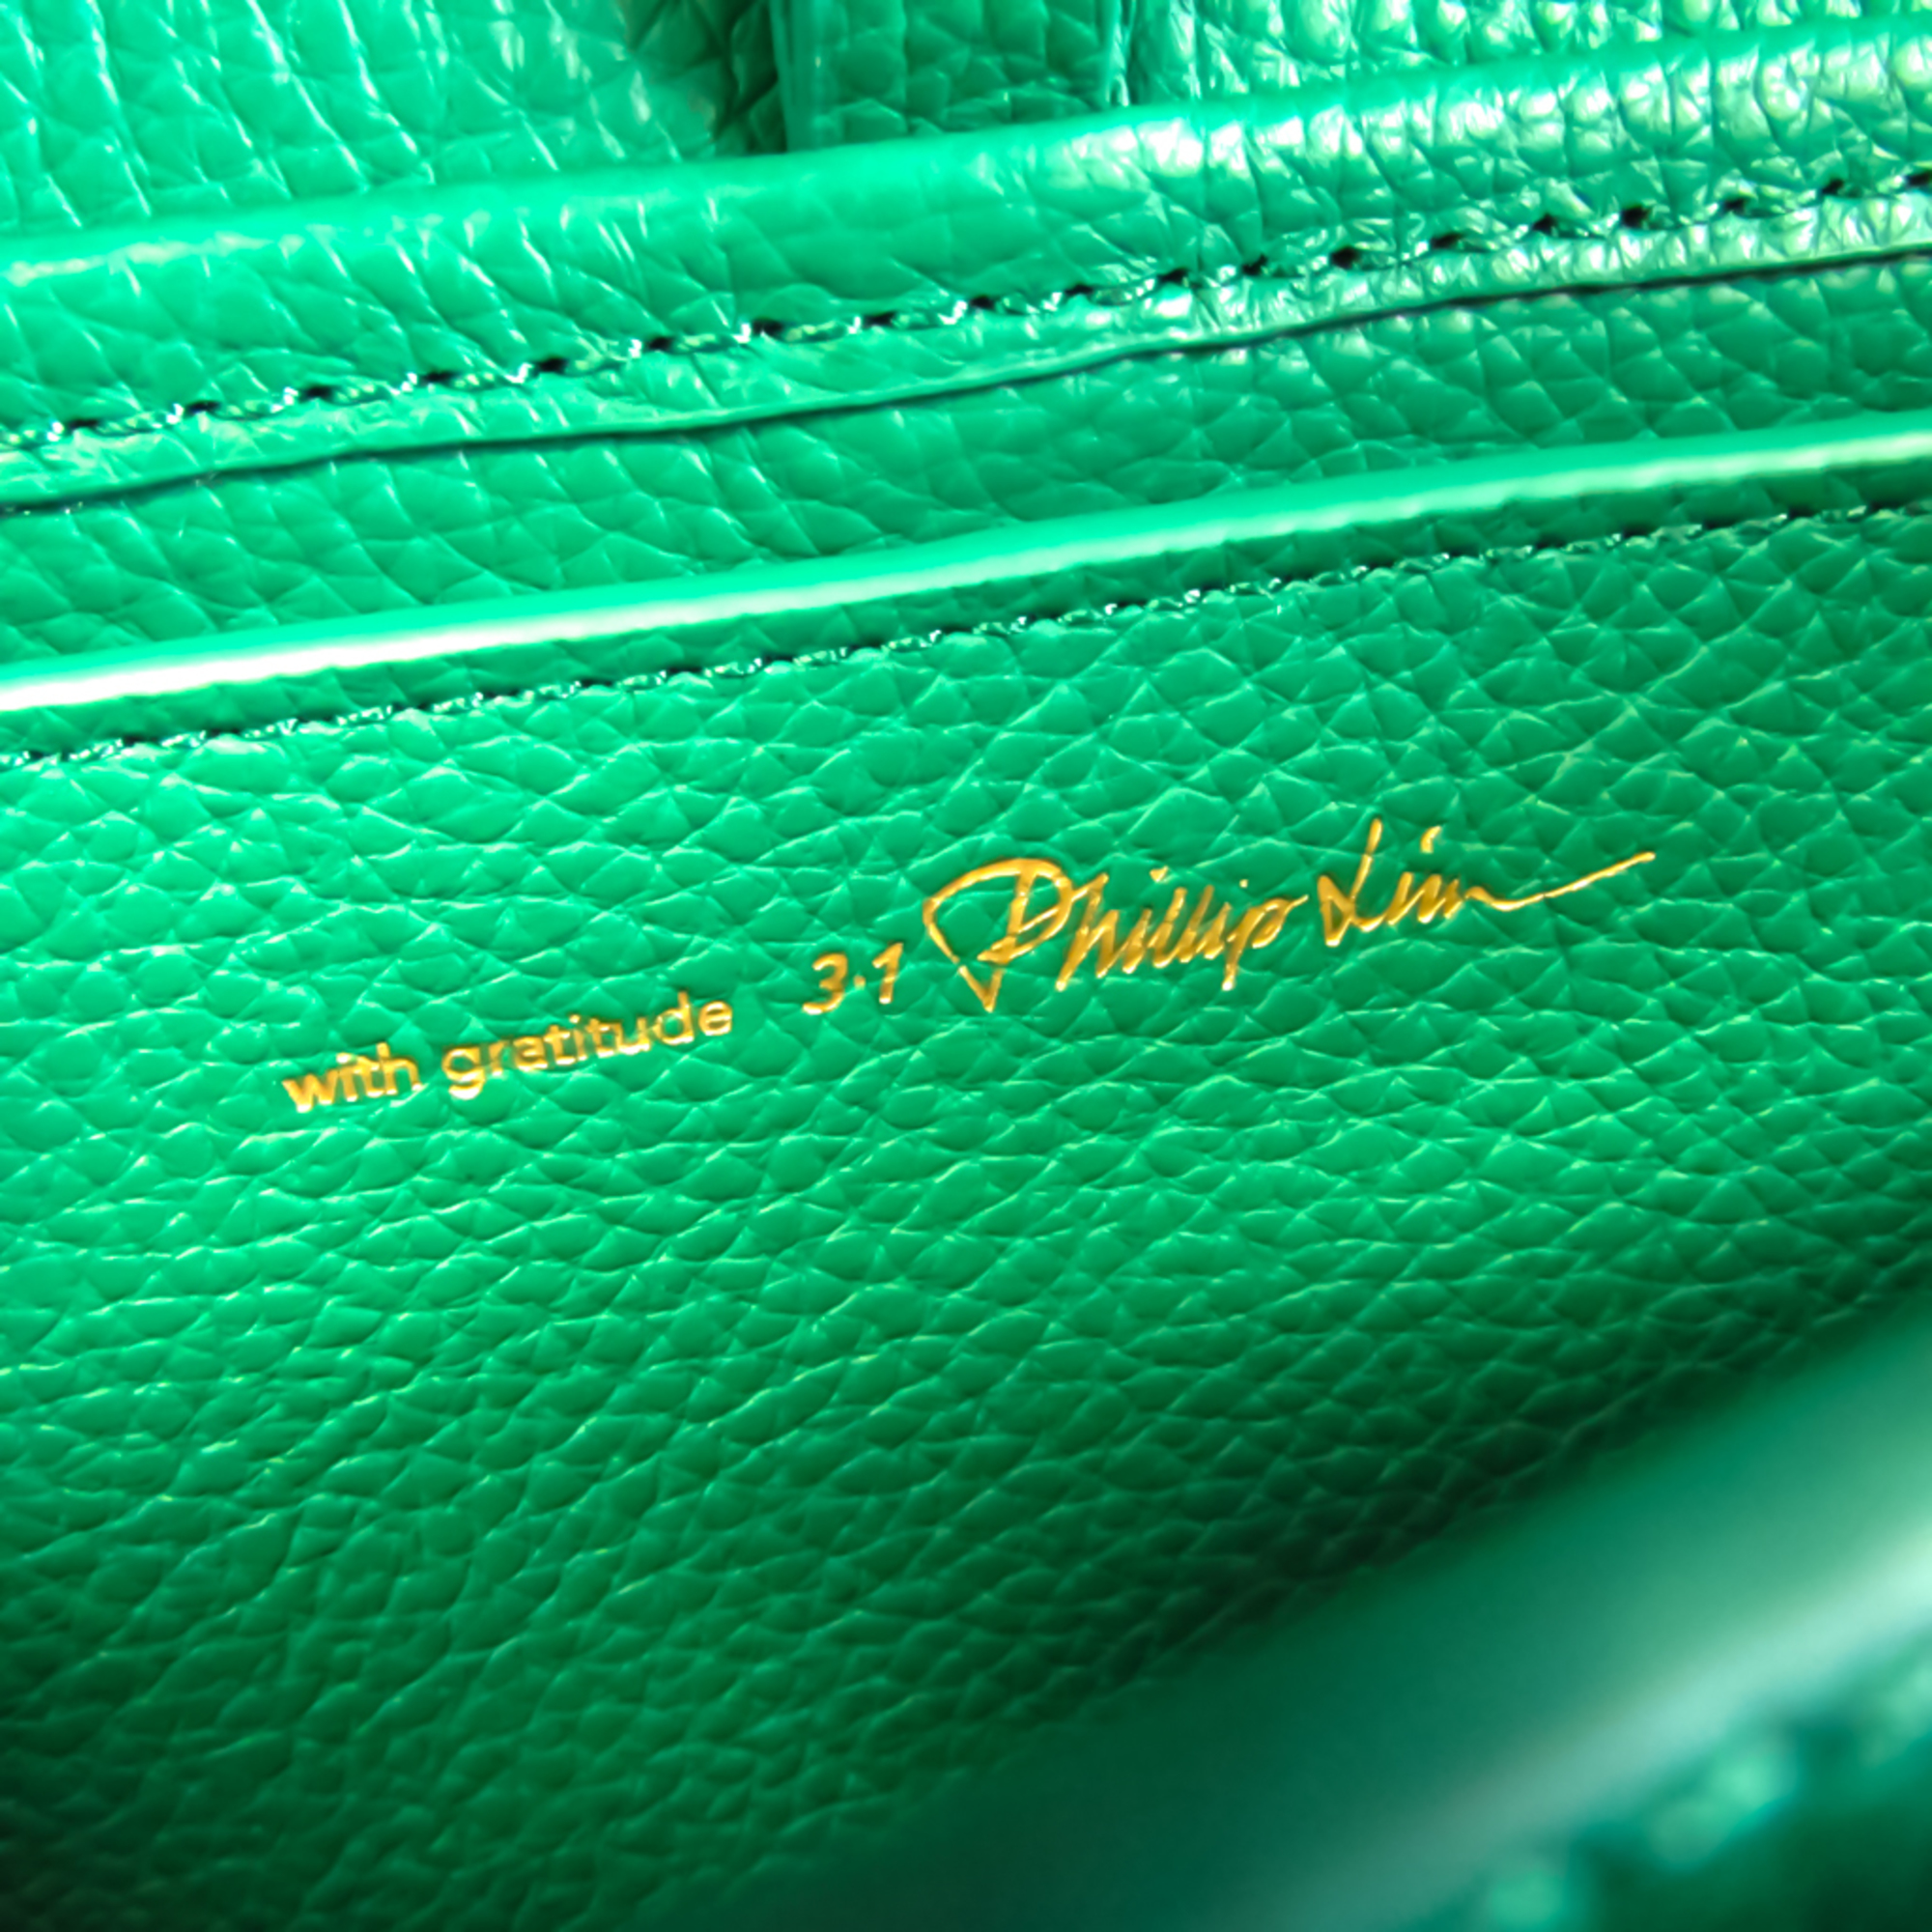 3.1 Phillip Lim Women's Leather Shoulder Bag Green